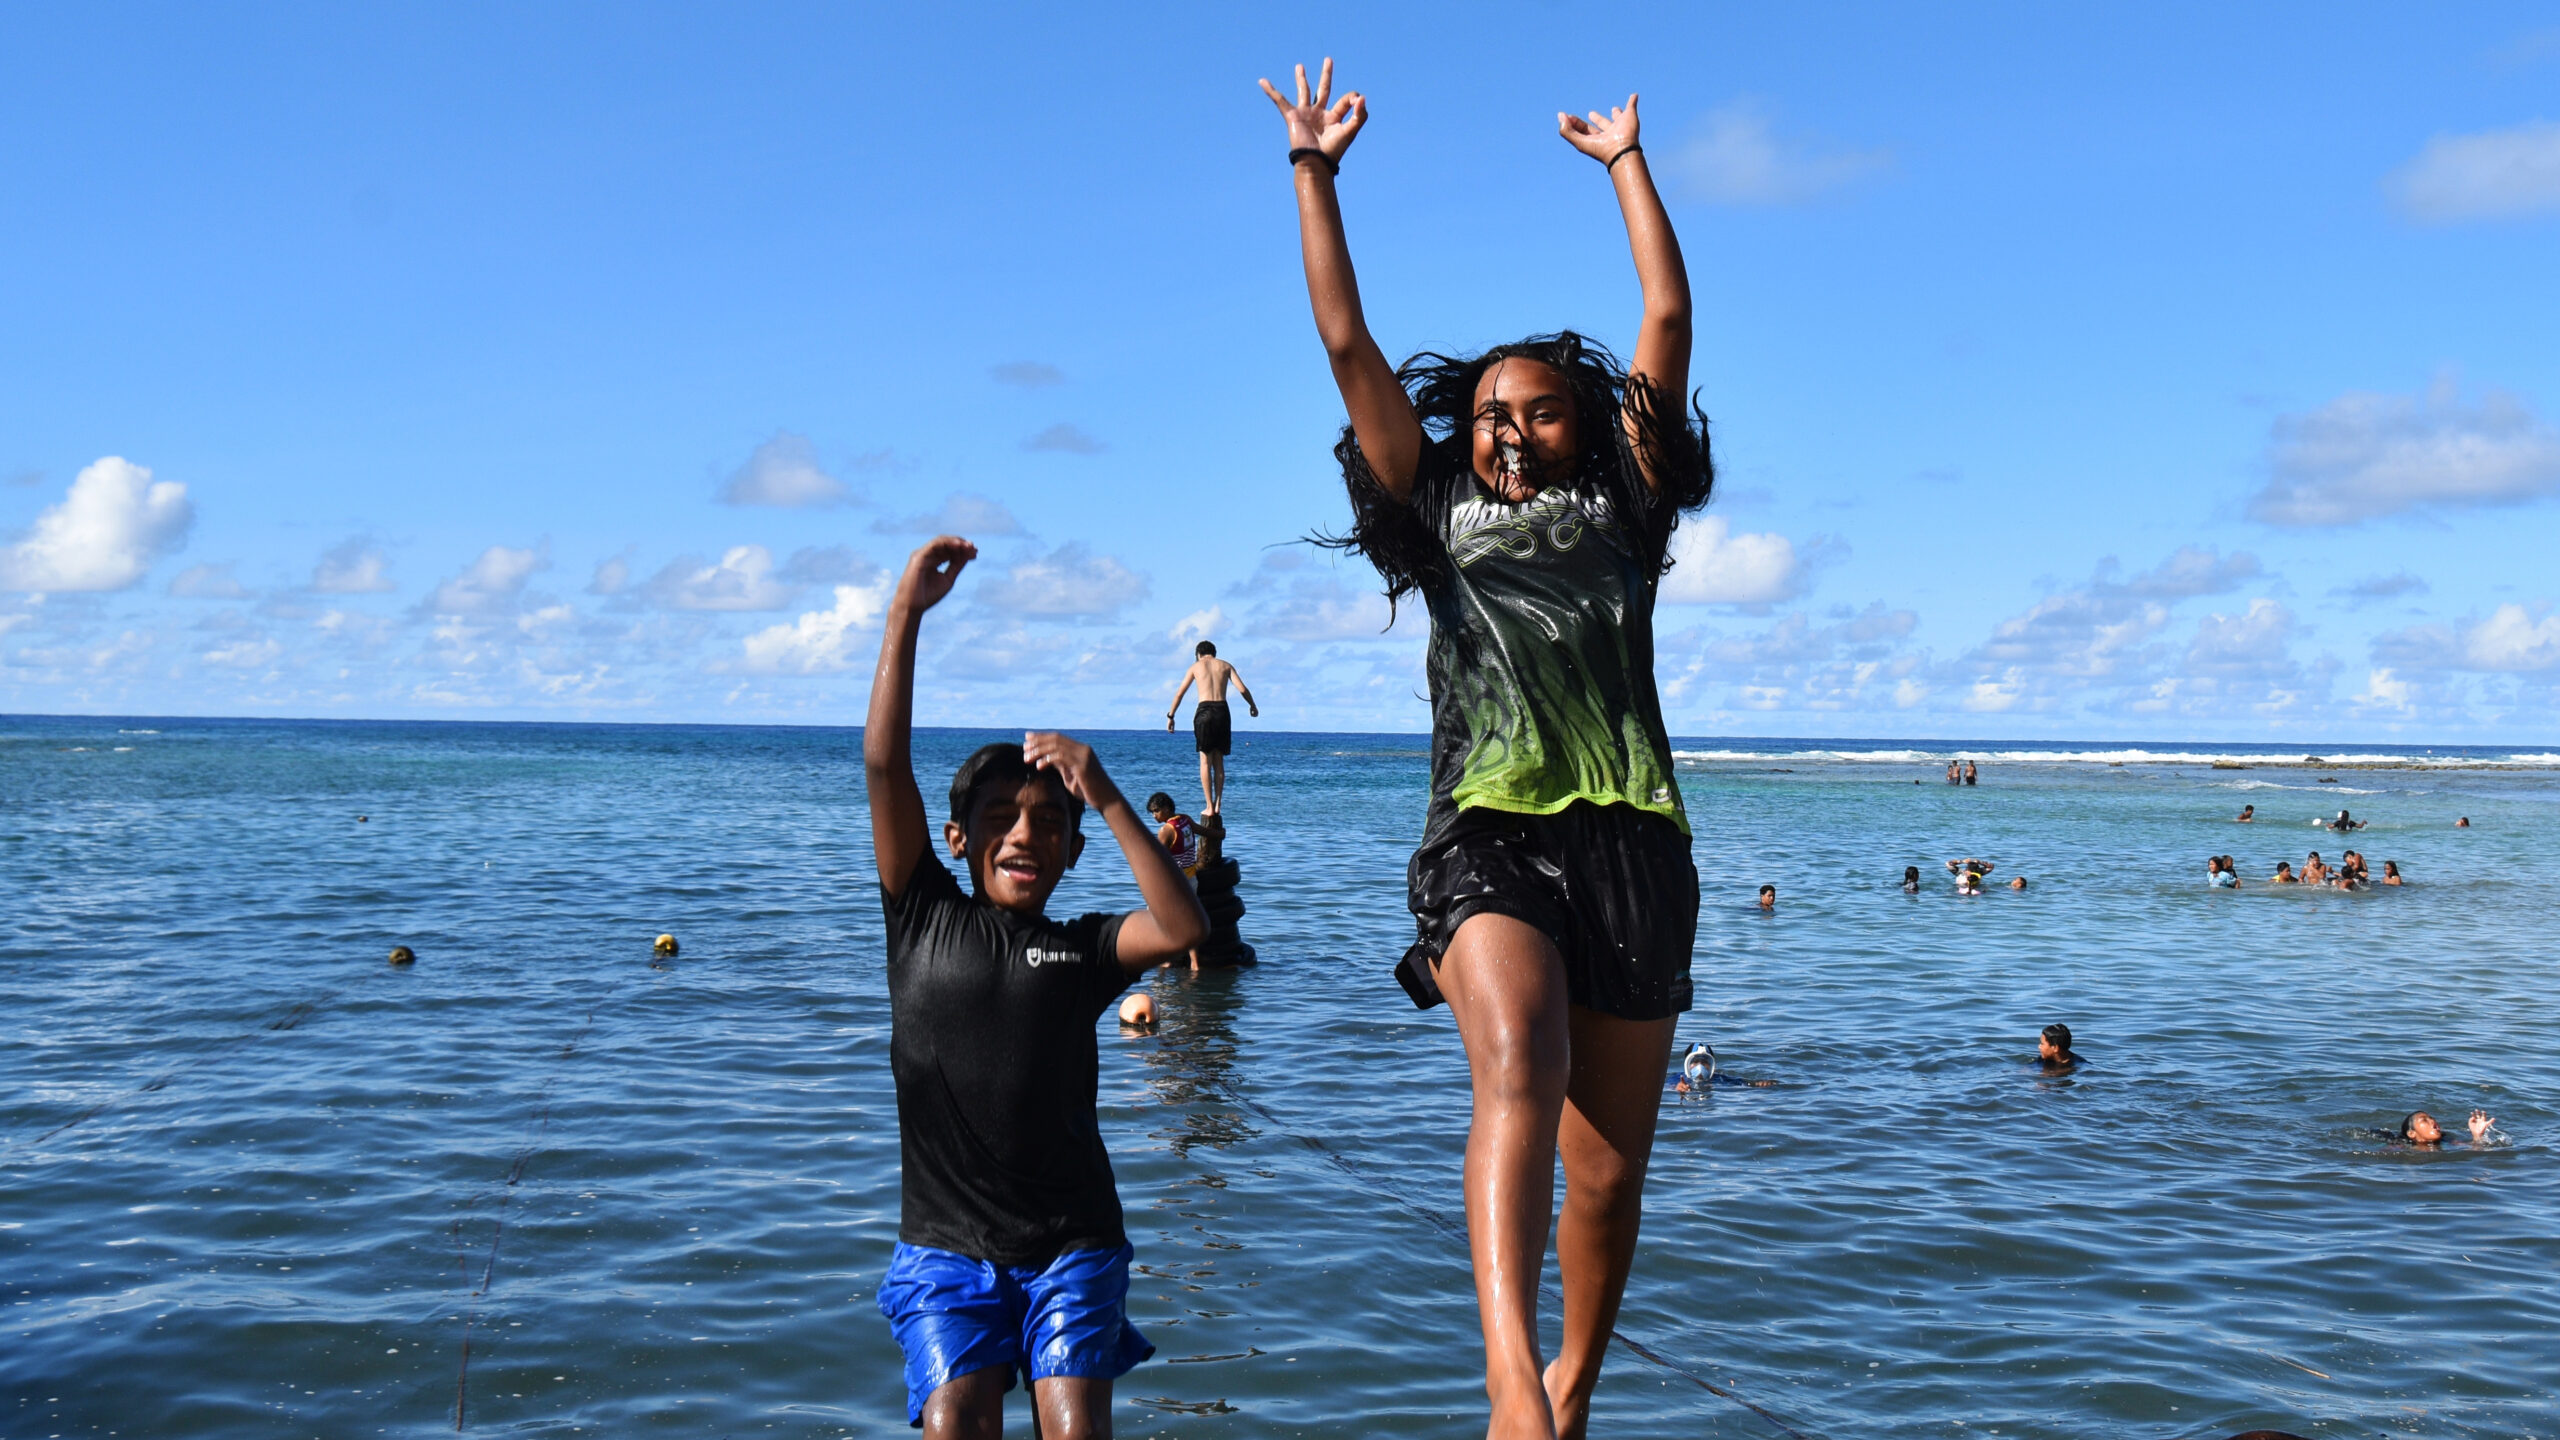 Siblings seek splash as summer conditions prevail